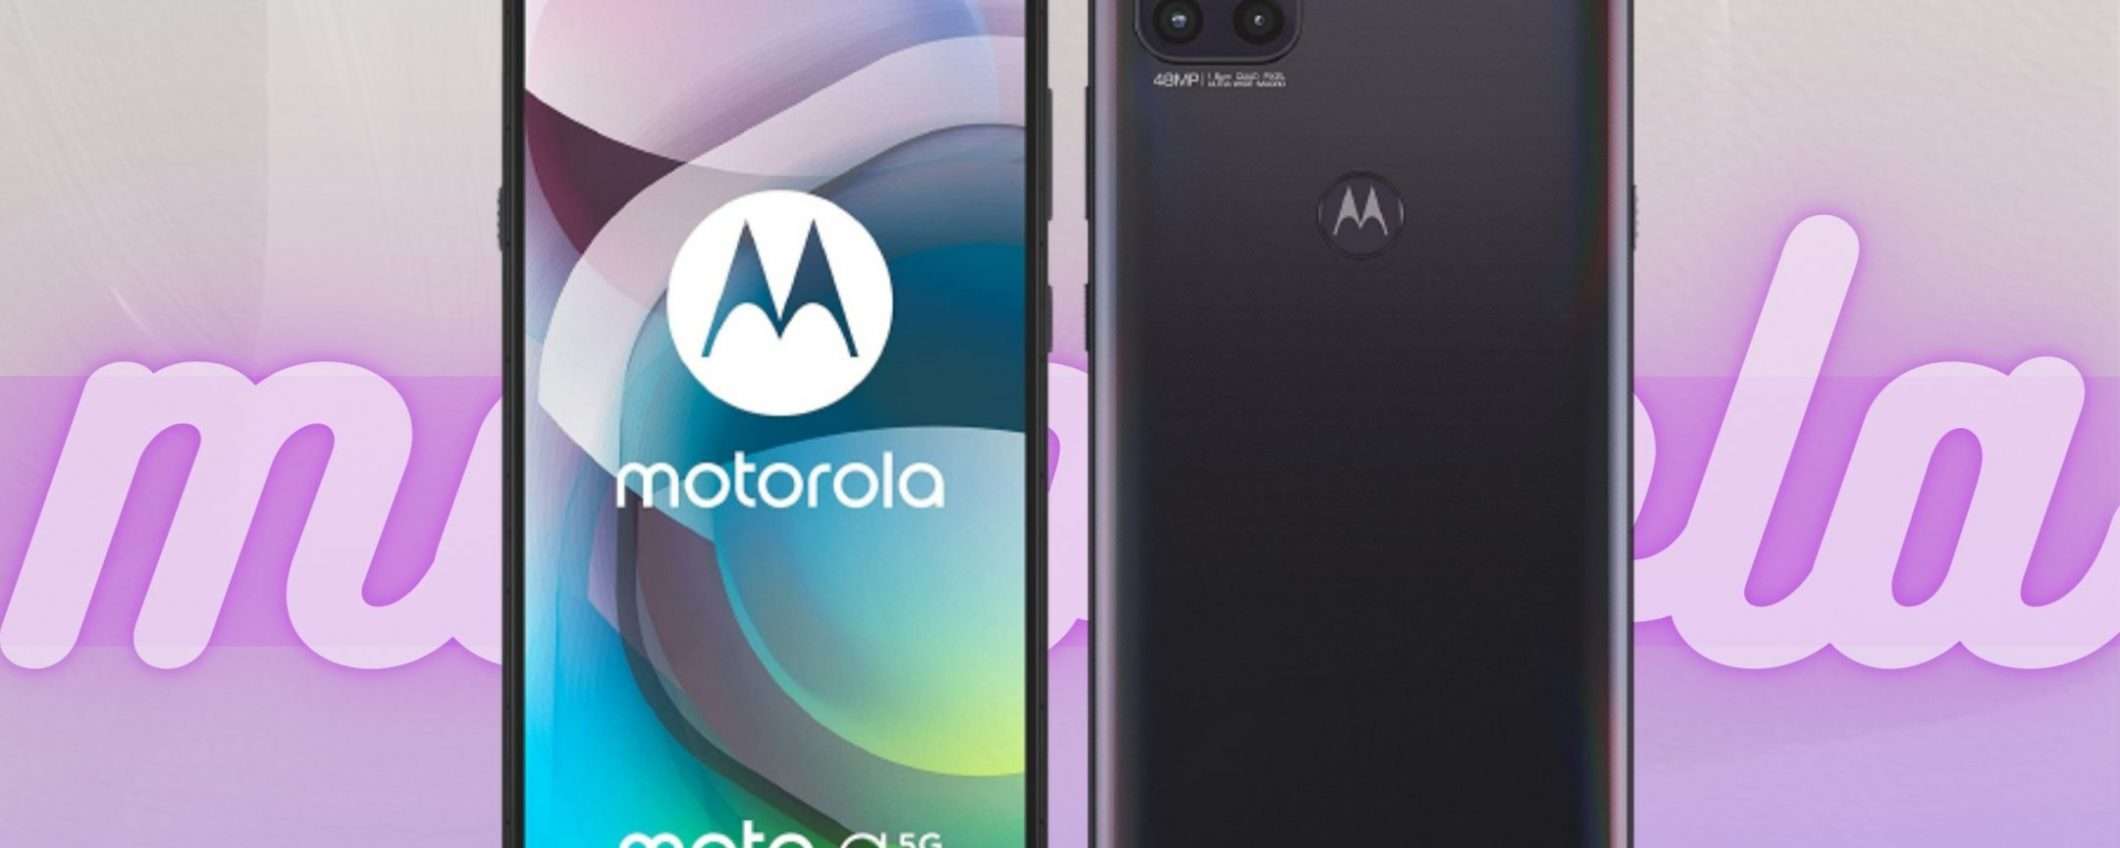 Motorola Moto G 5G: sconto incredibile su questo gioiellino